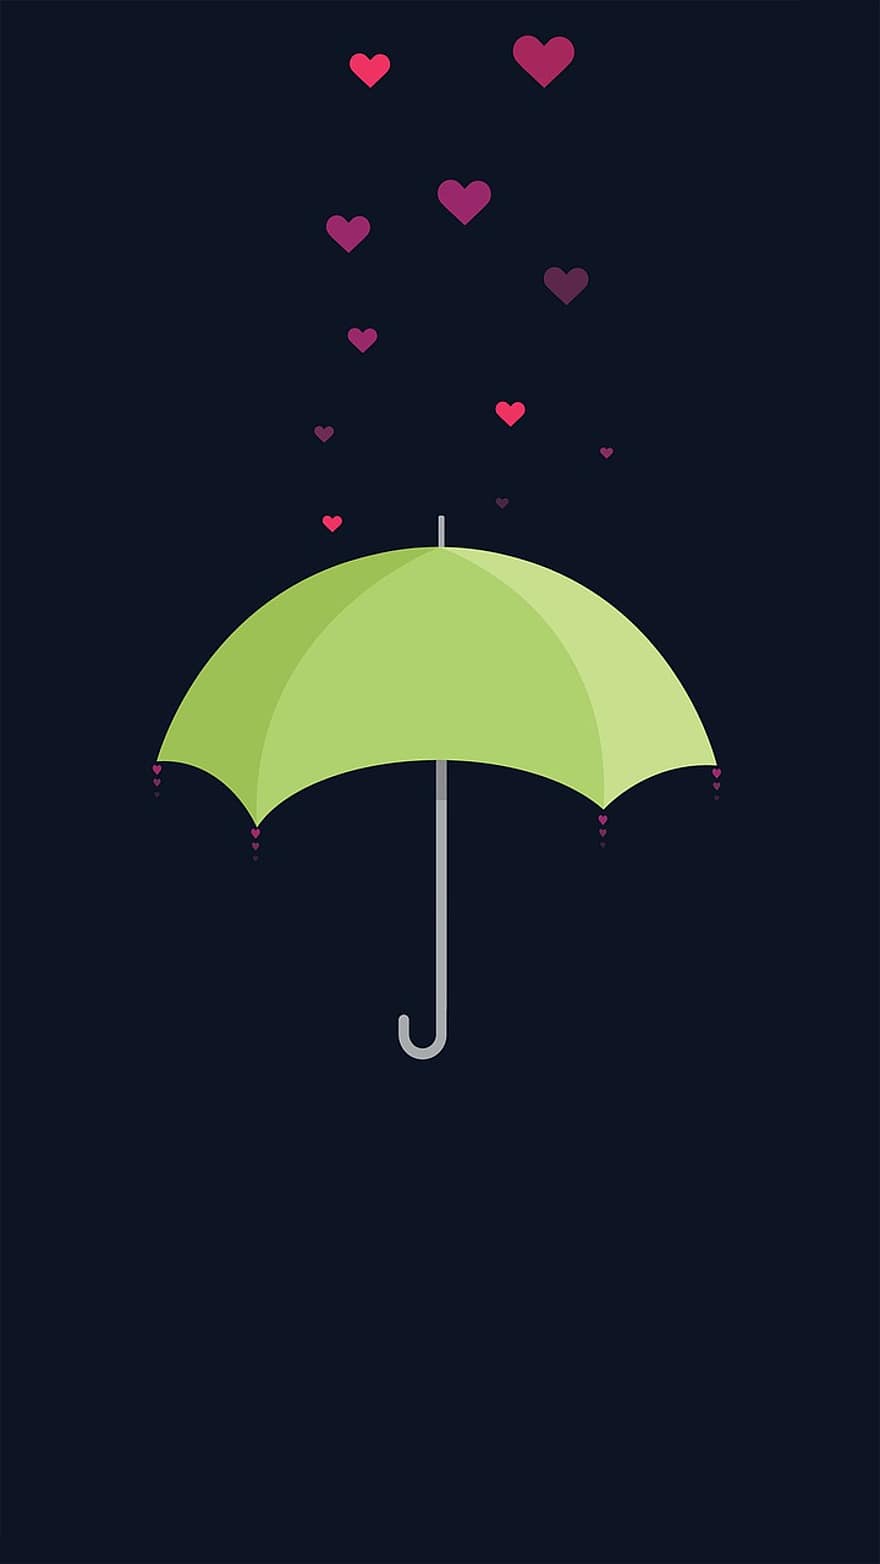 şemsiye, Aşk, yağmur, aşıklar, romantik, Mavi Aşk, Mavi yağmur